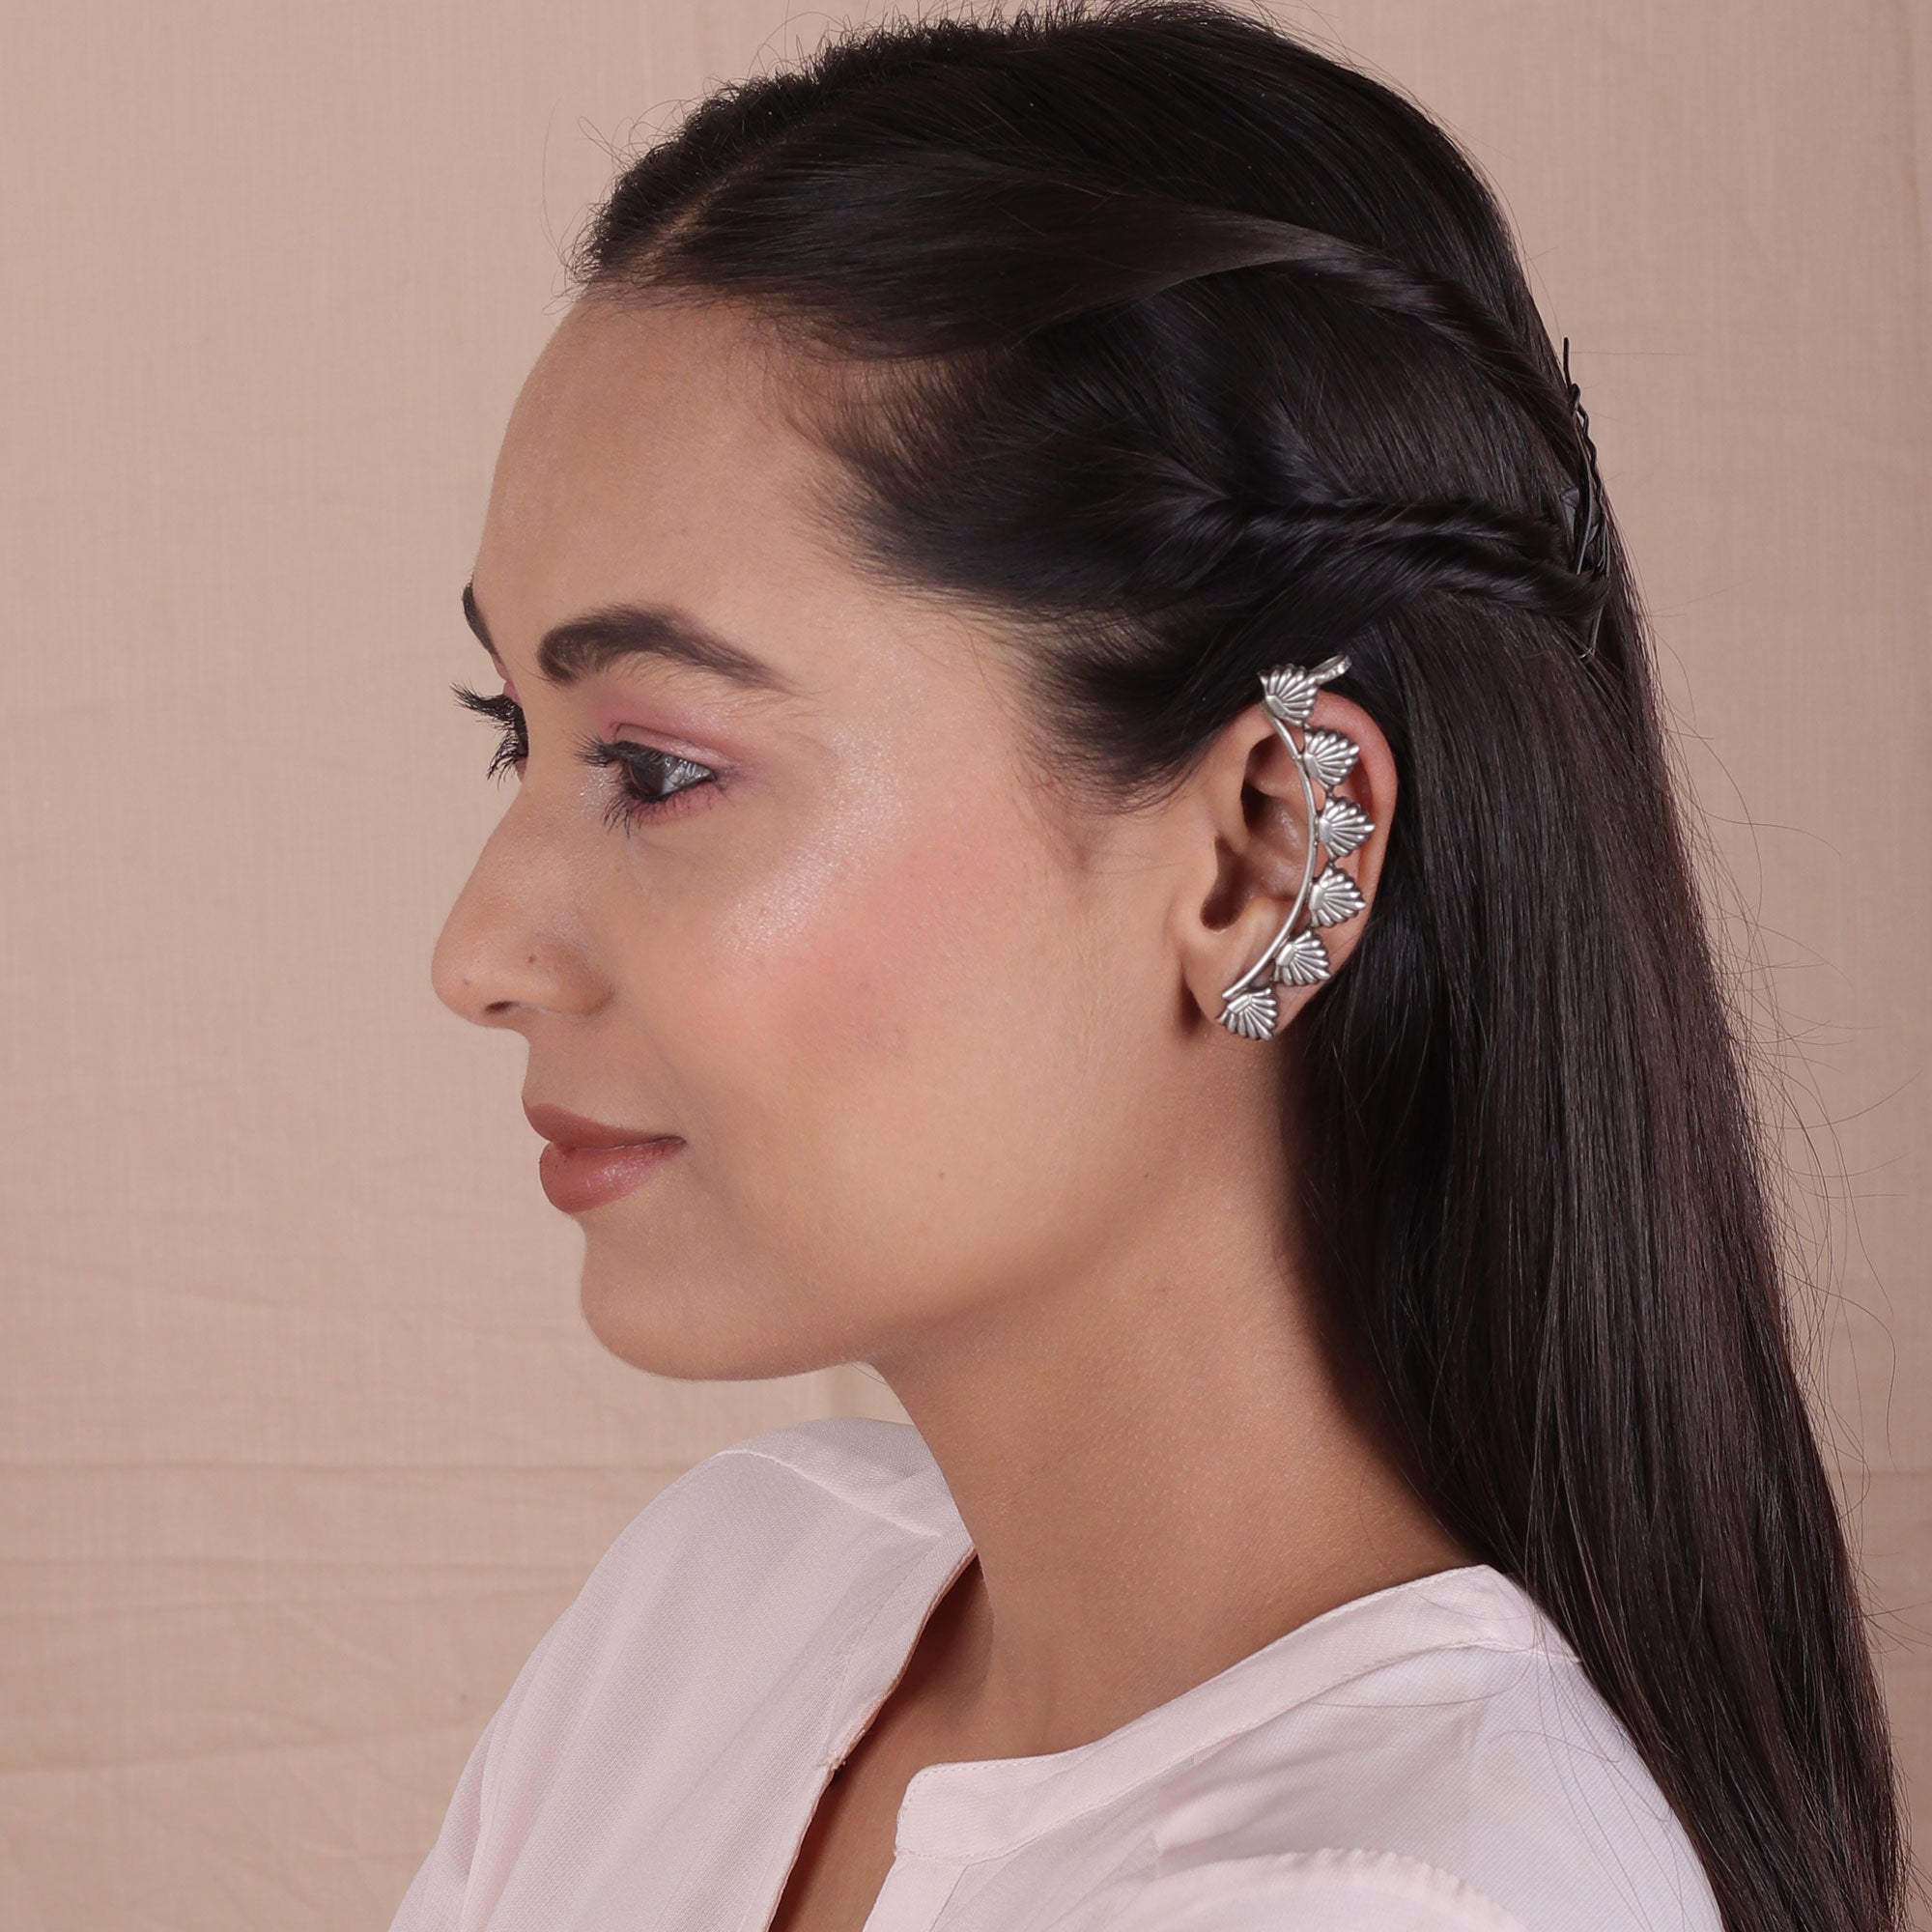 Fancy Stylish Full Ear Earrings Design/Beautiful & Trendy Cuff Earrings/Cuff  Earrings With Crystal - YouTube